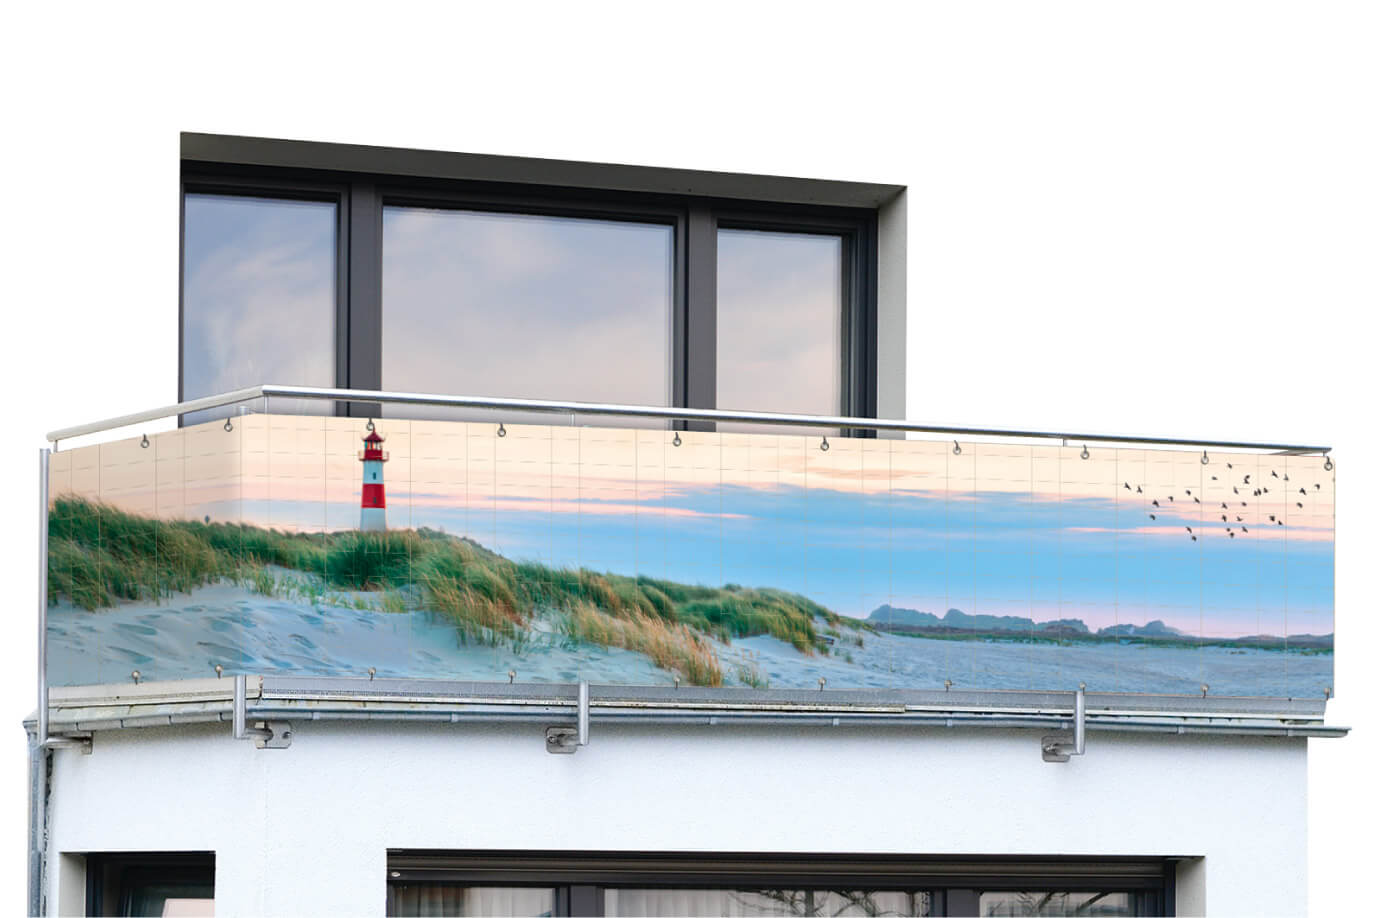 Balkon-Sichtschutz NORDSEEKÜSTE